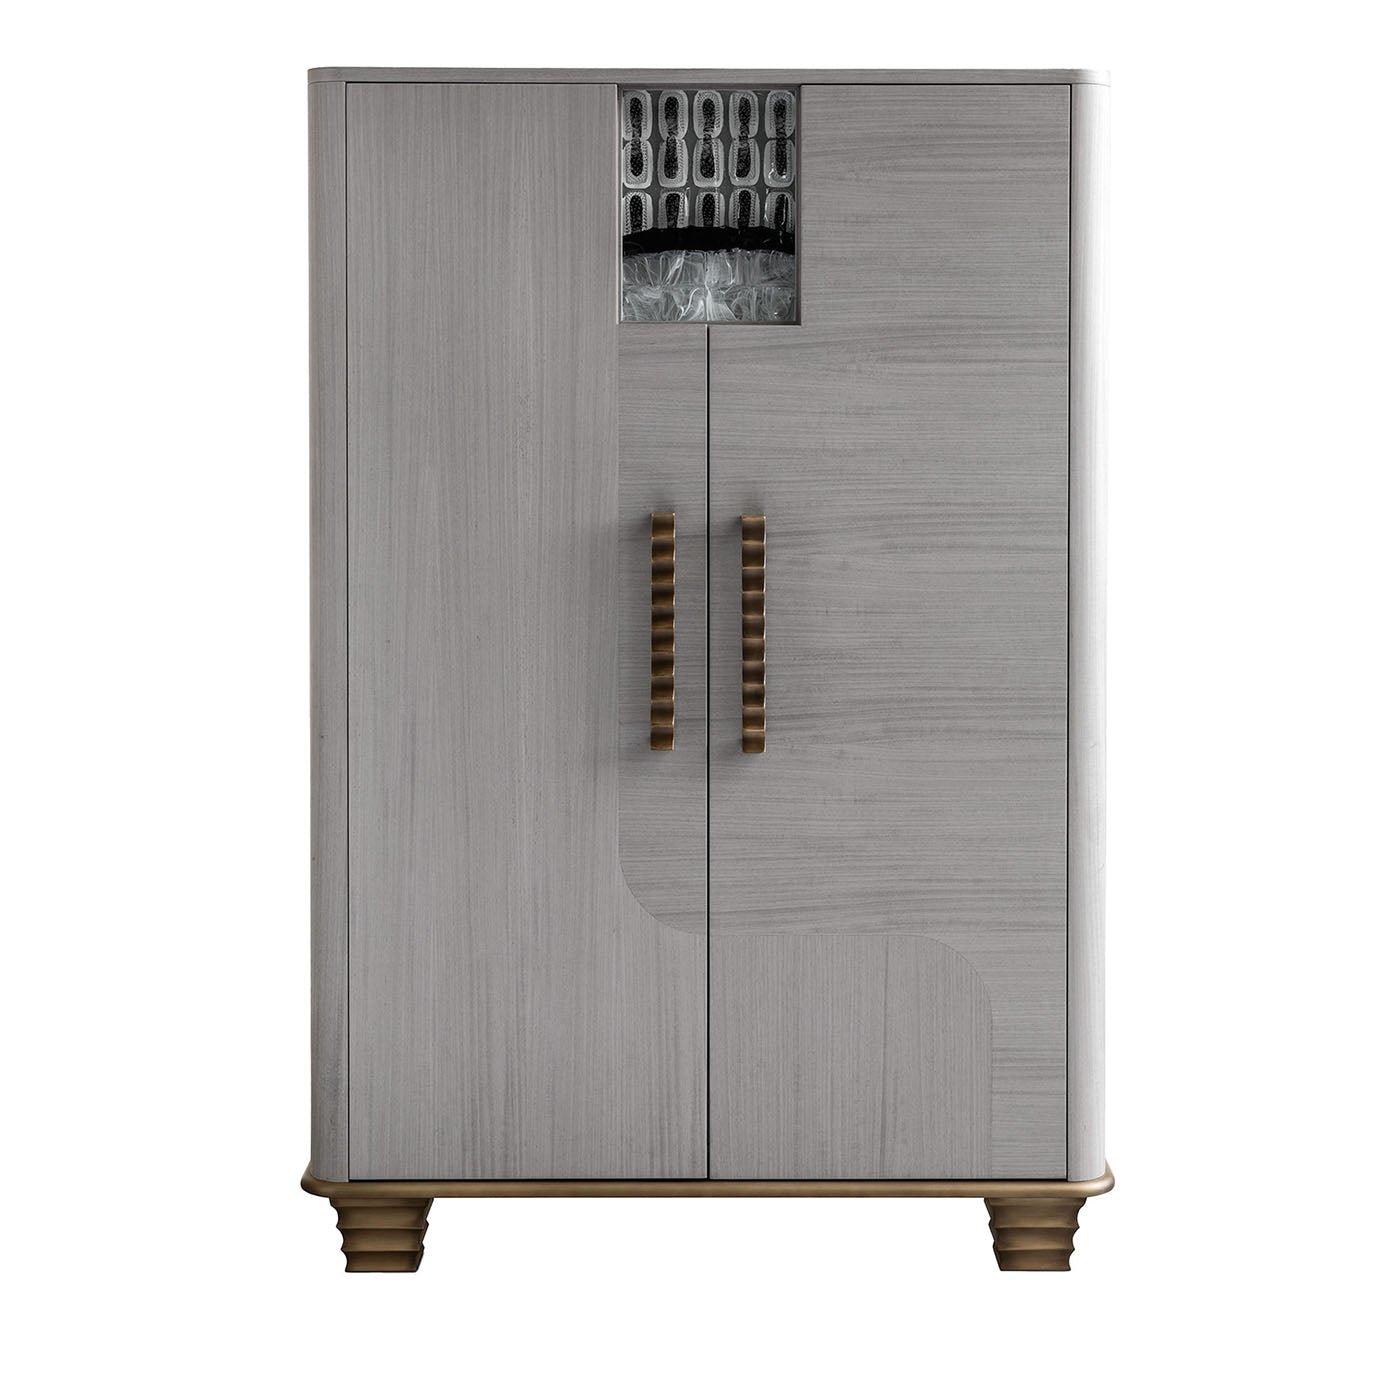 Cosmopolitan 2-Door Inlaid Gray Wooden Bar Cabinet - Main view